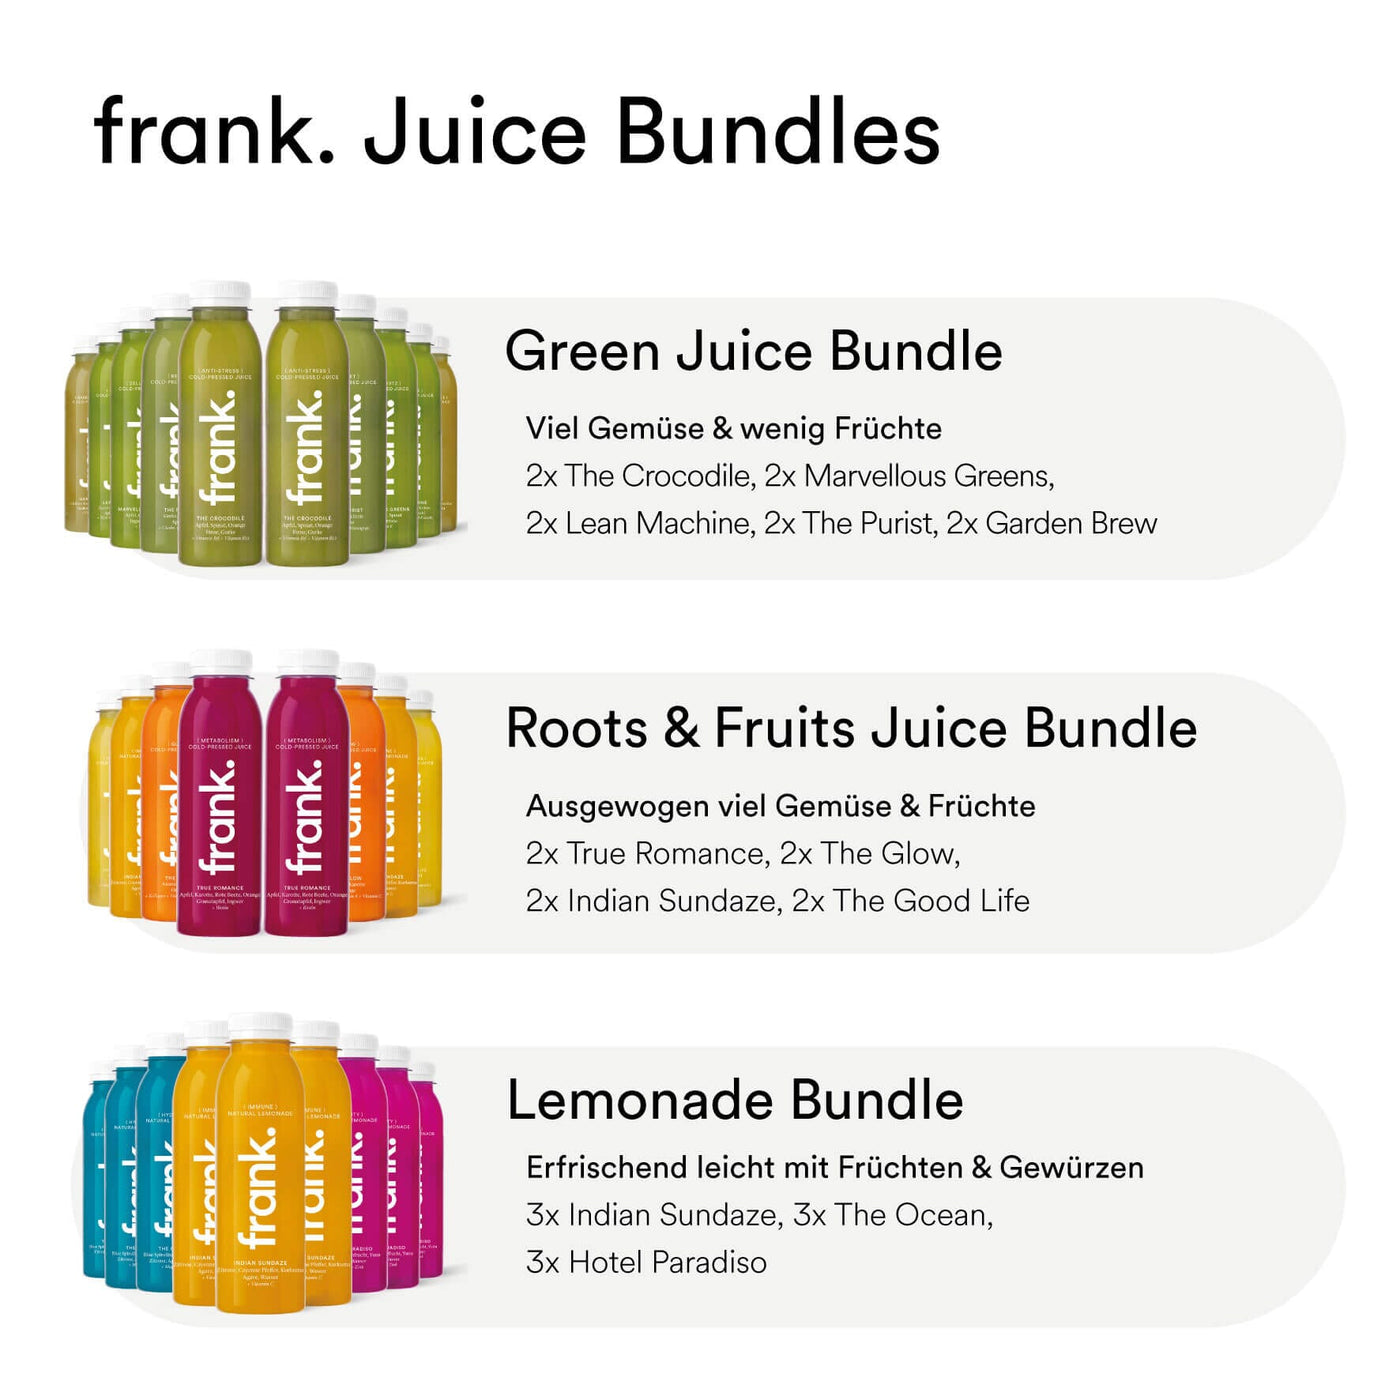 Roots & Fruits Juice Bundle